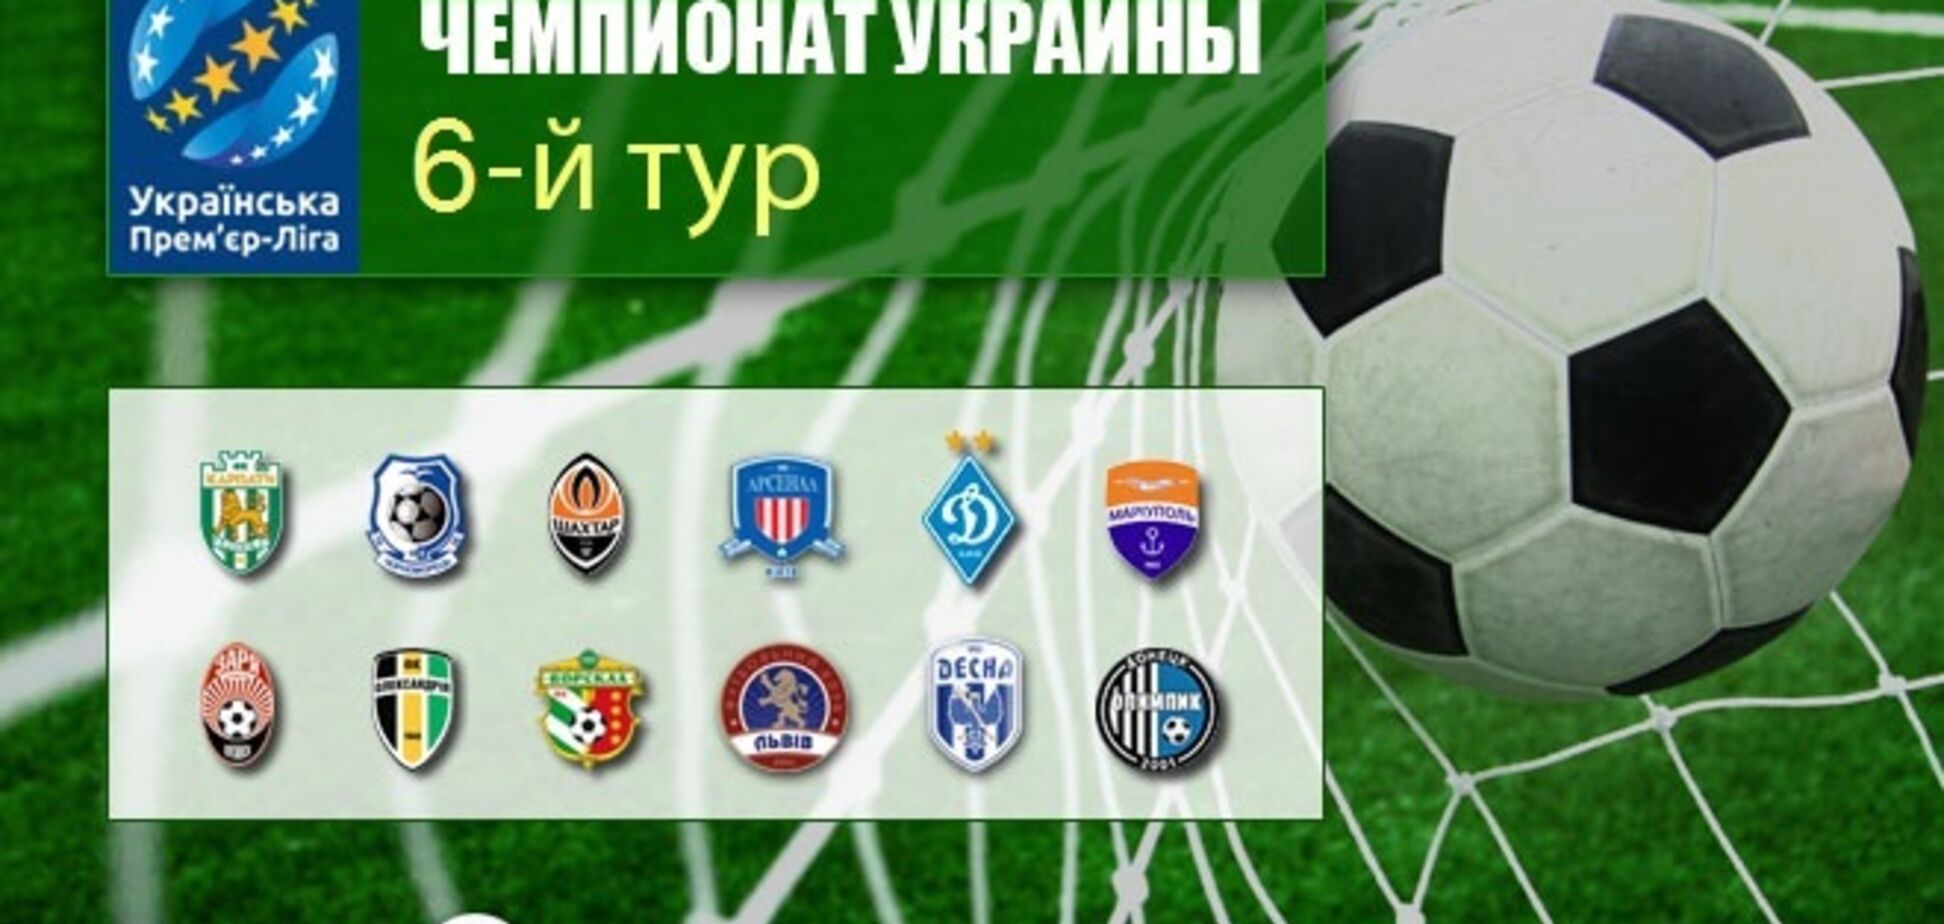 6-й тур чемпіонату України з футболу: результати та огляди